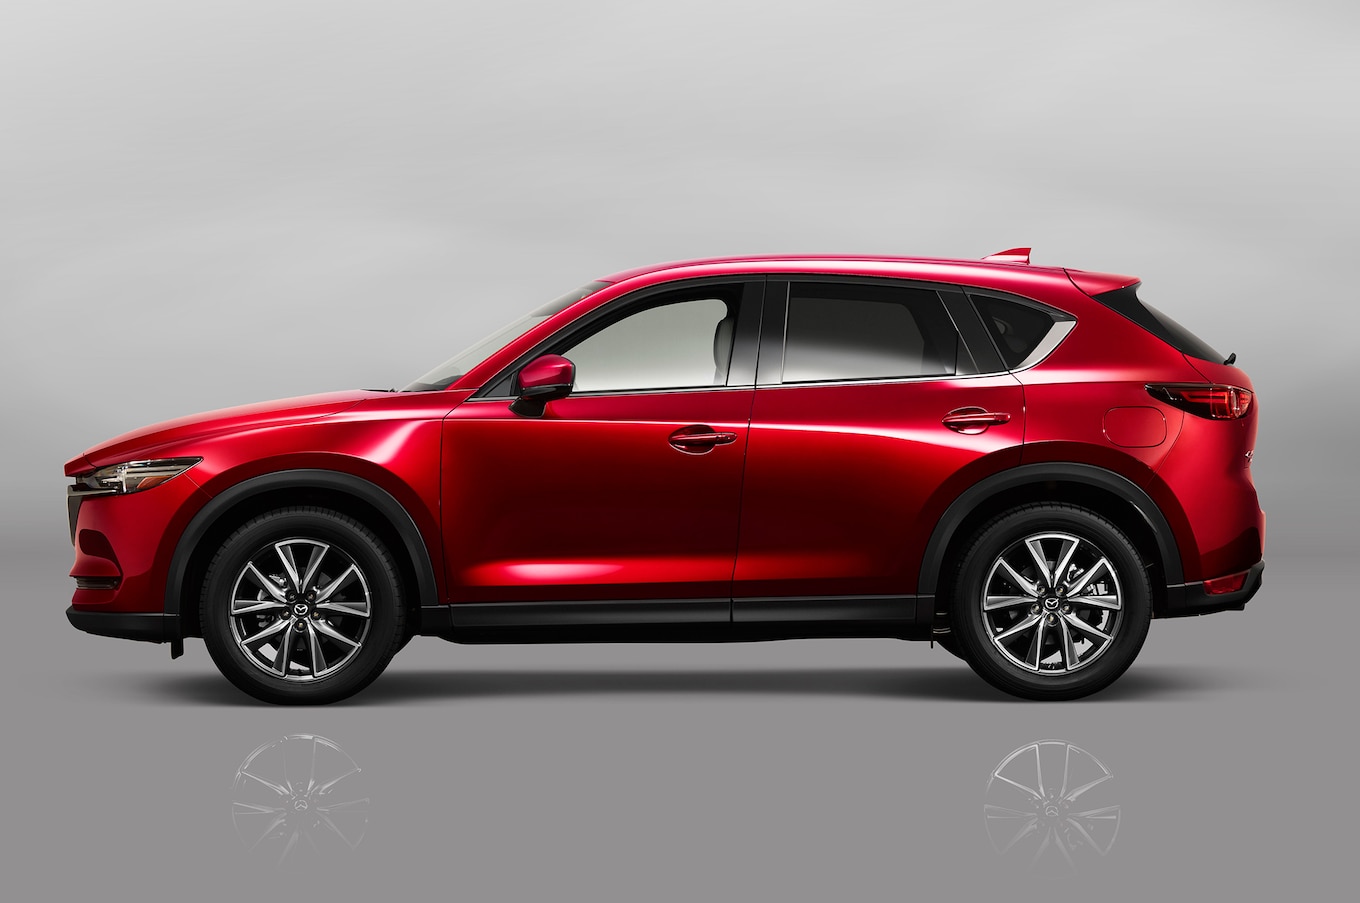 2017-Mazda-CX-5-side-profile.jpg